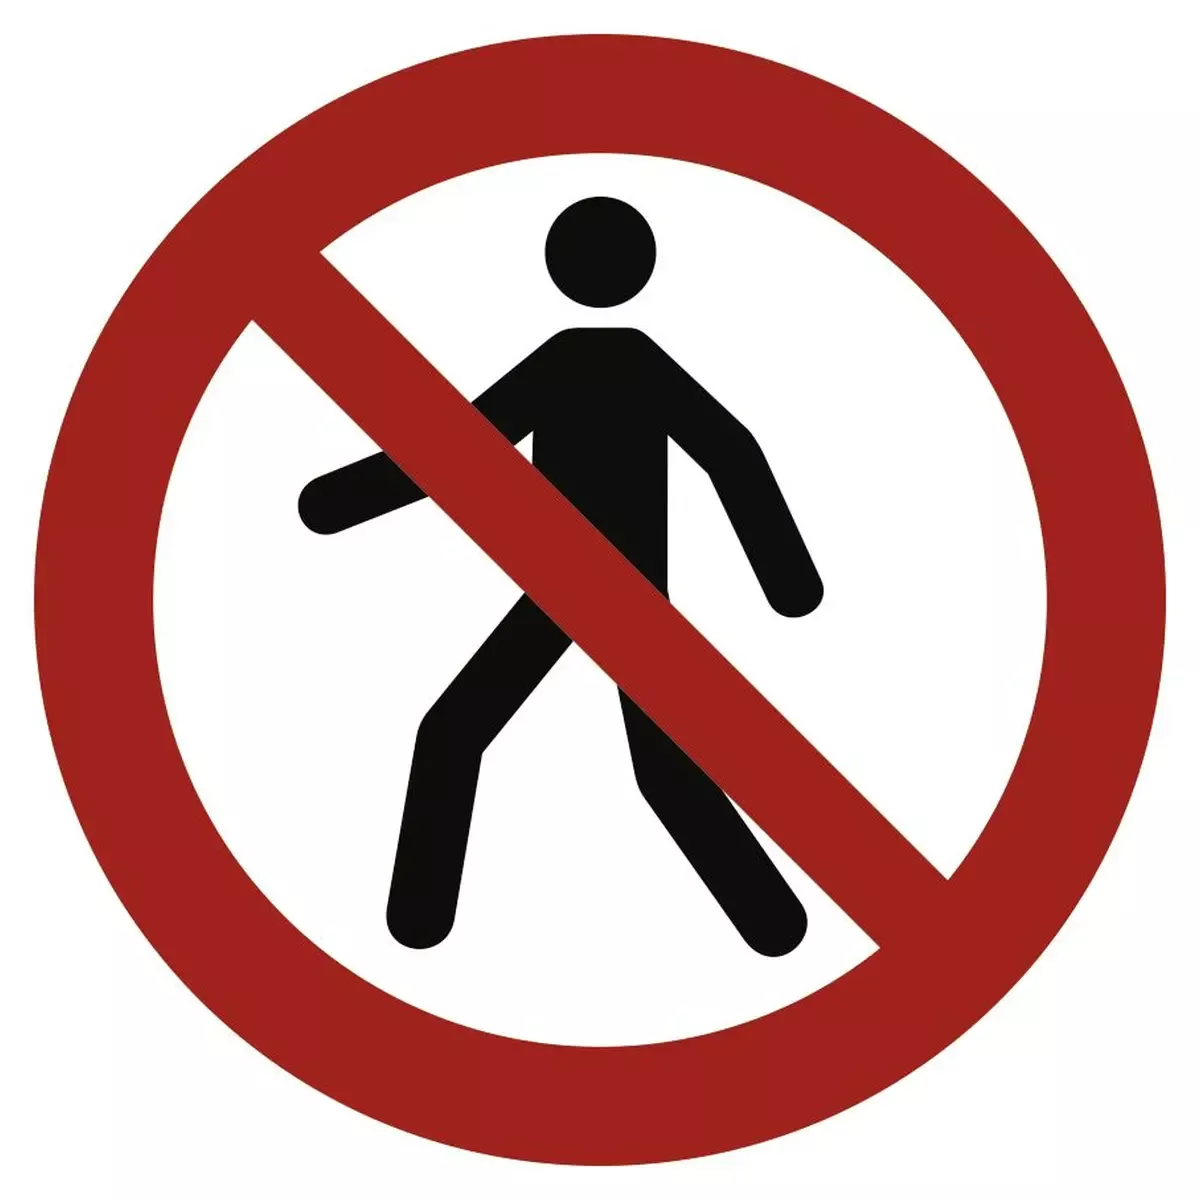 Für Fußgänger verboten ISO 7010, Alu, Ø 315 mm